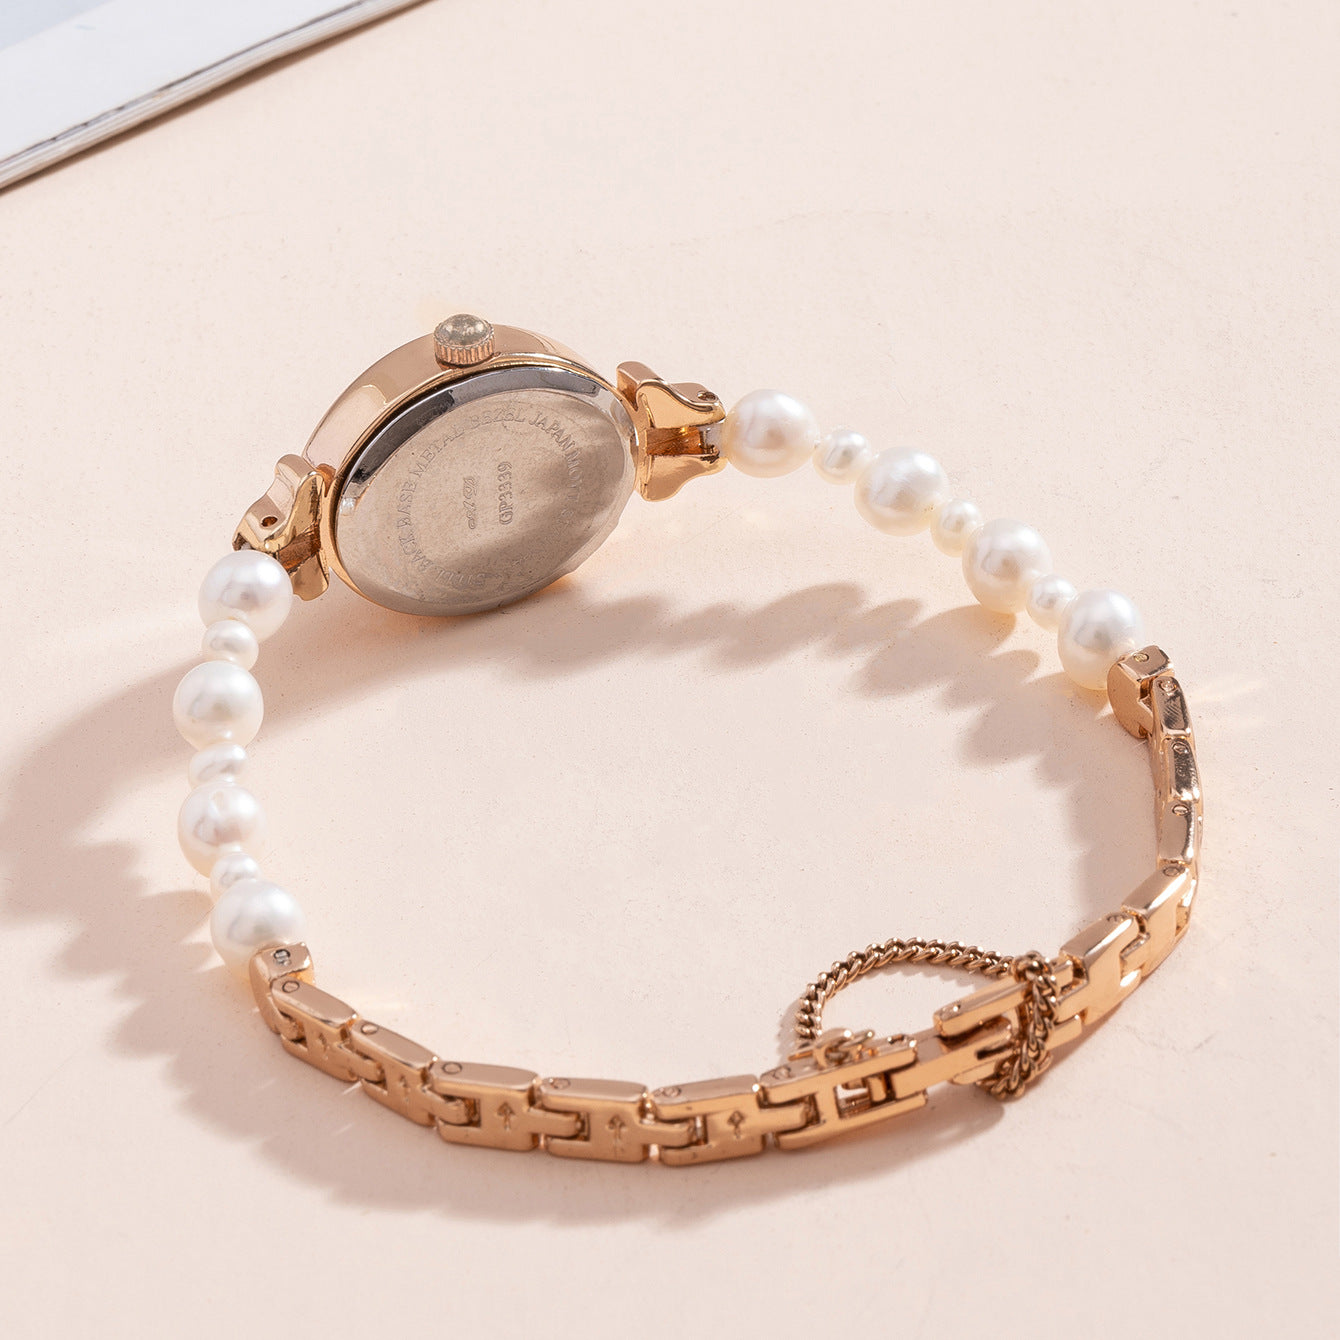 Women's Waterproof Simple Quartz Watch Jewelry